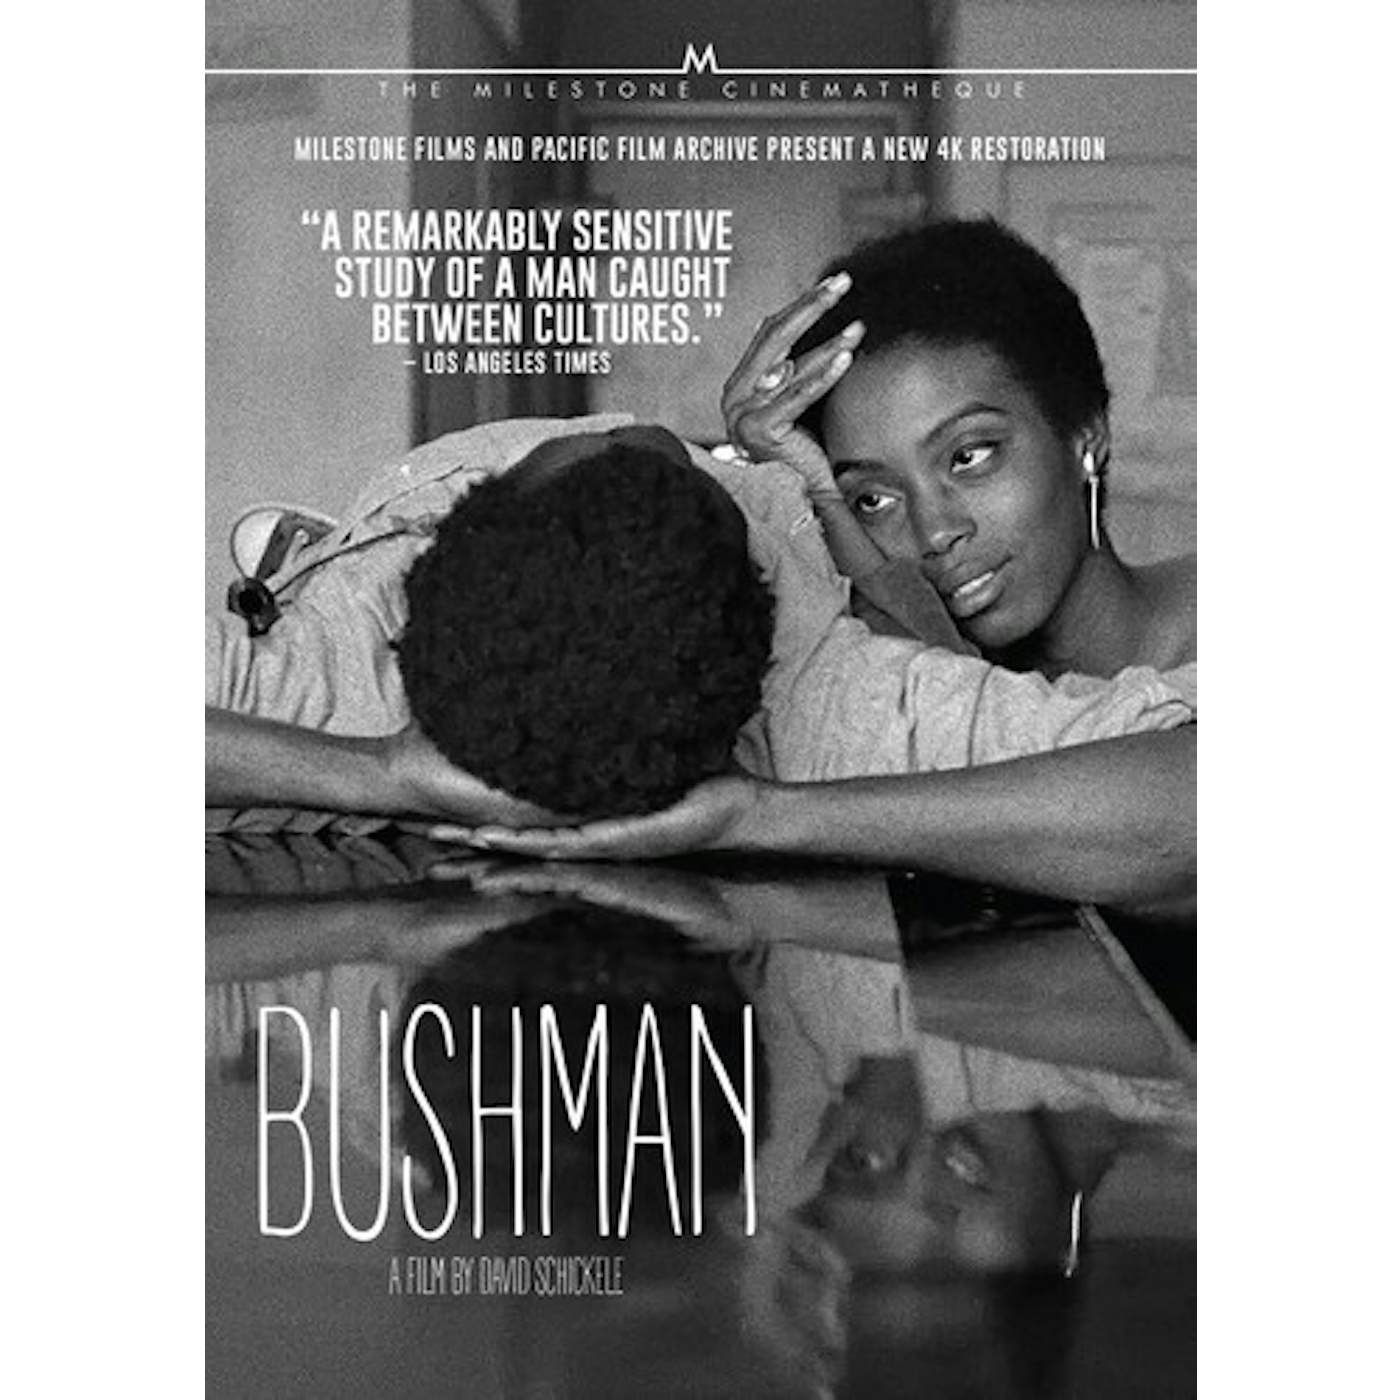 BUSHMAN DVD